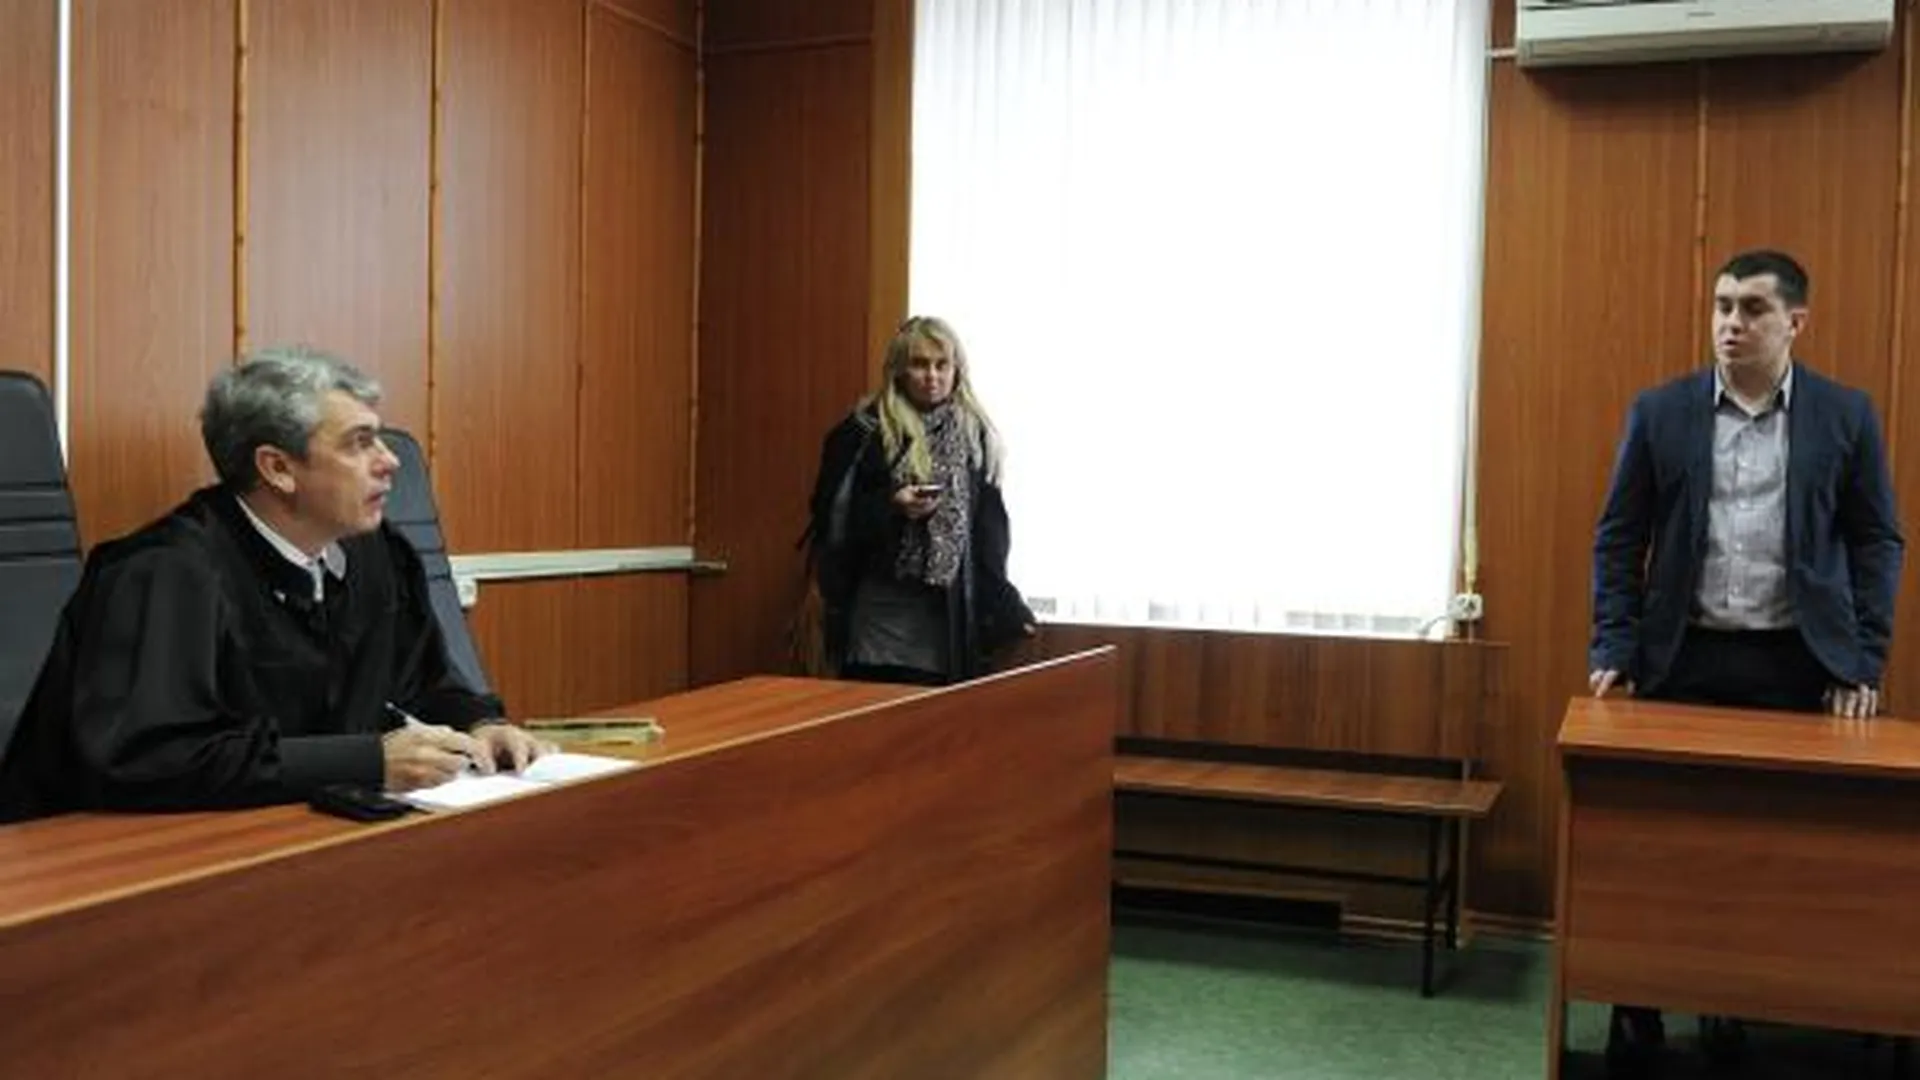 Юрист Ветров назвал метод быстрого завершения семейного спора в суде